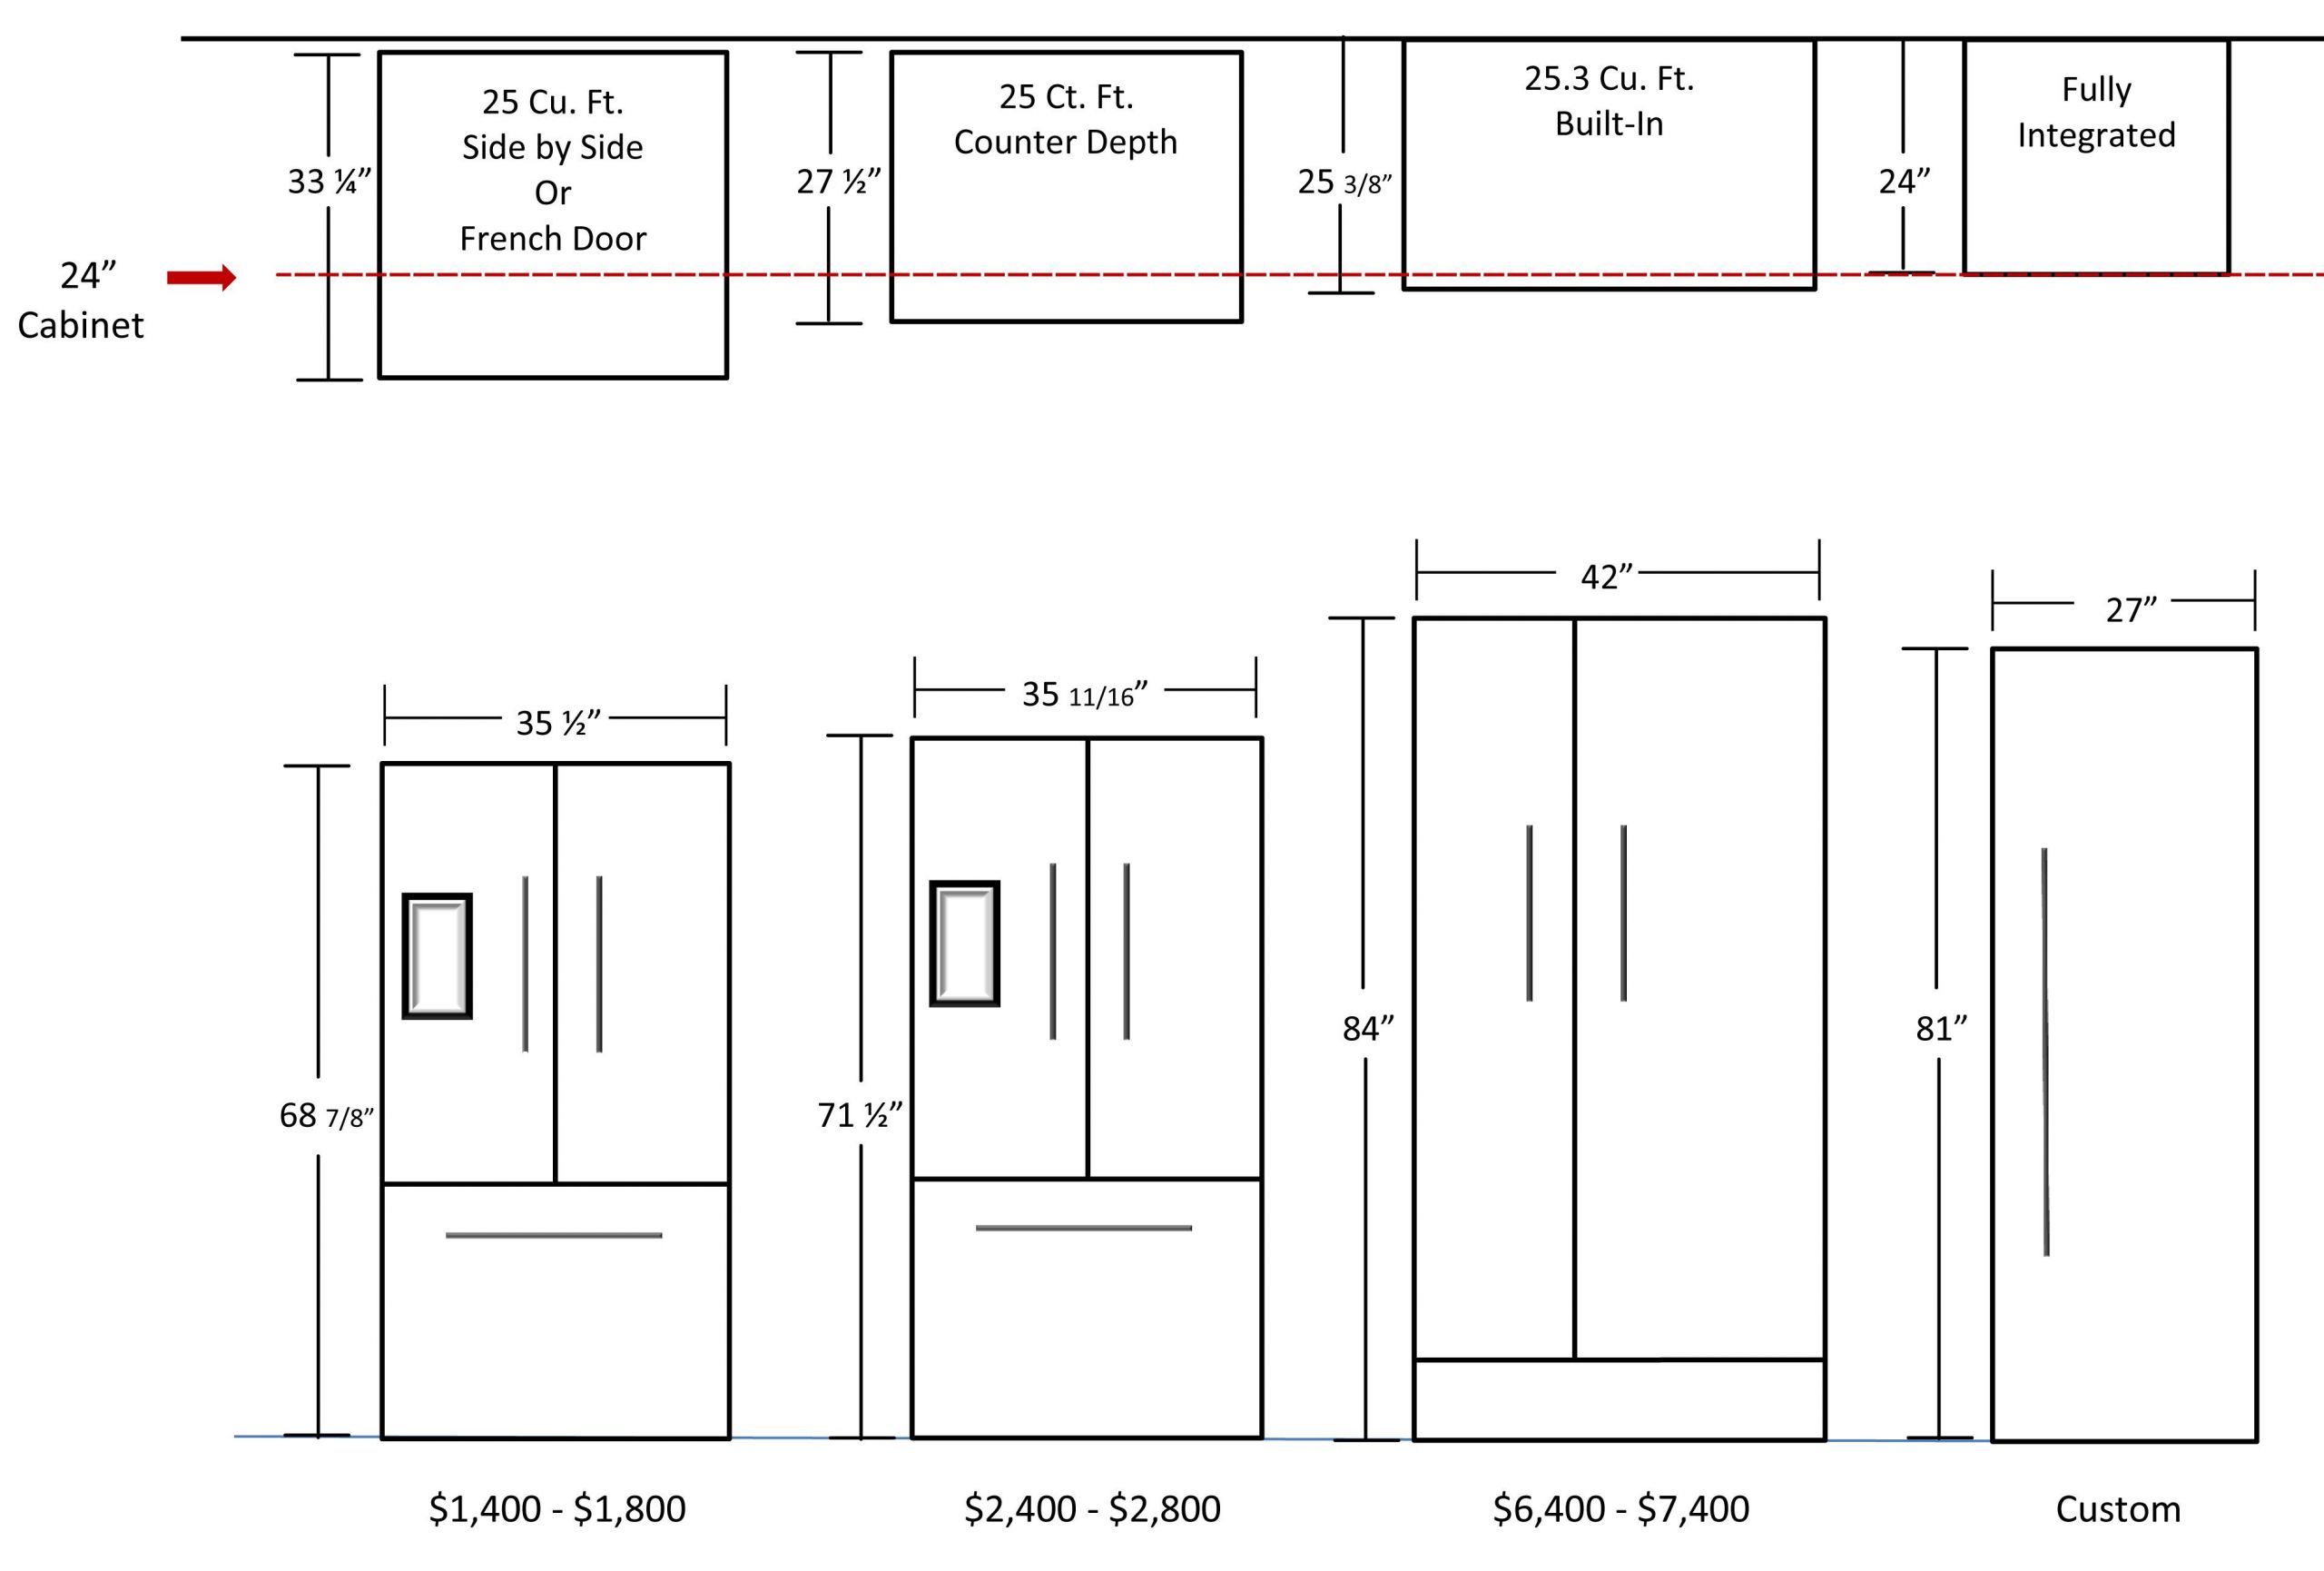 Average Kitchen Counter Depth Luxury Kitchen Dimensions Fridge Of Average Kitchen Counter Depth Scaled 